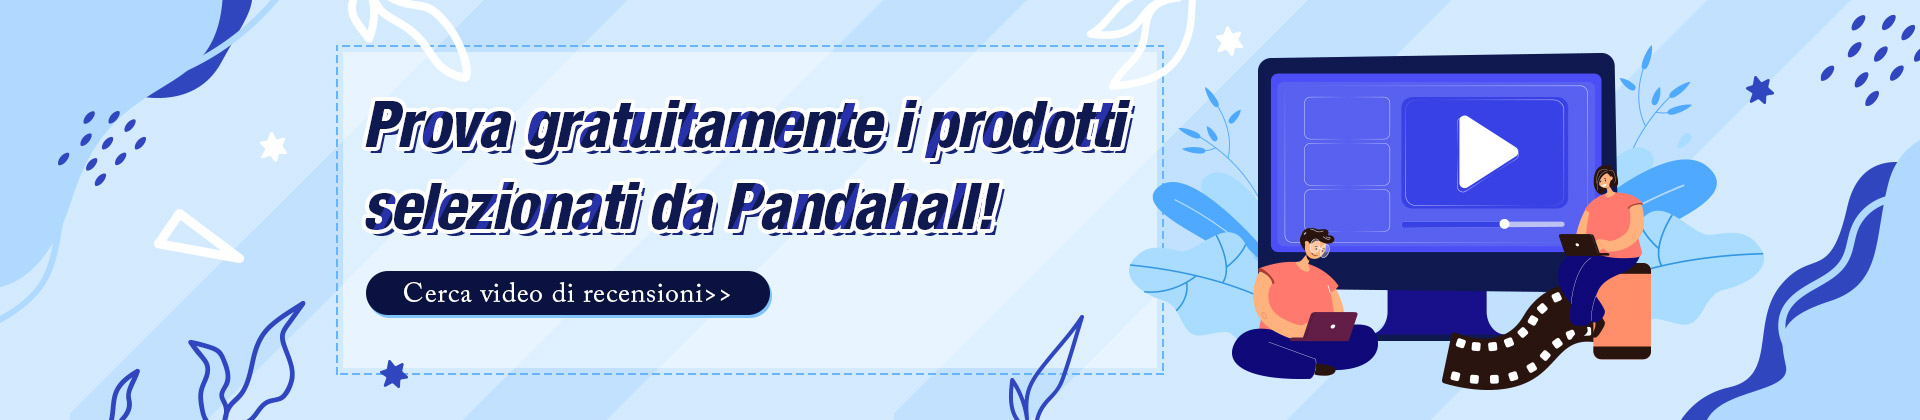 Prova gratuitamente i prodotti selezionati da Pandahall!